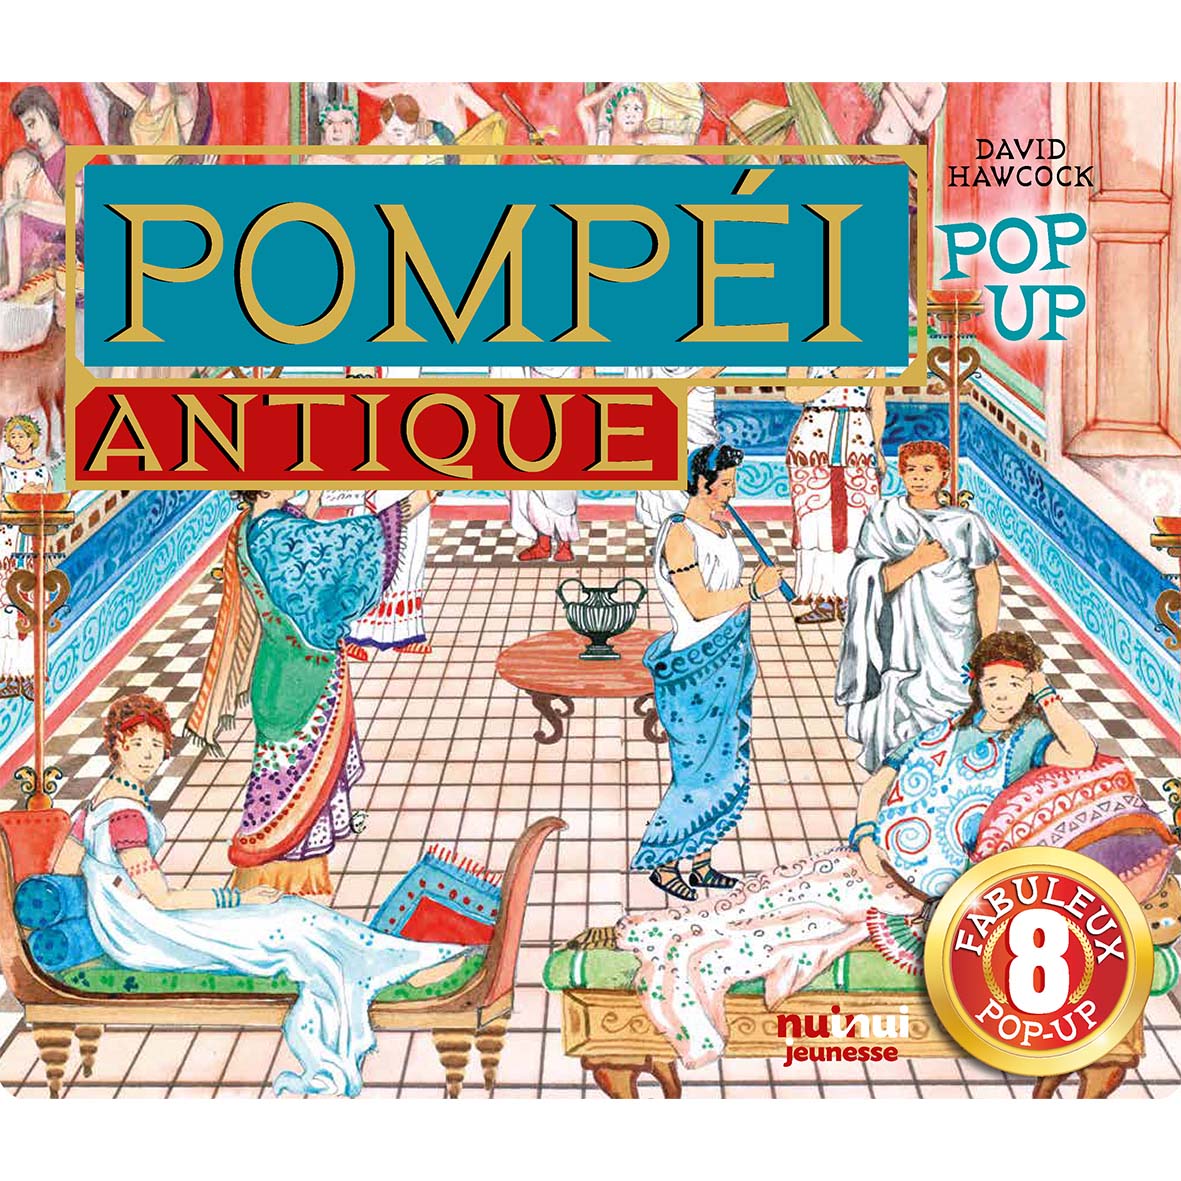 Pop-up historique - Pompéi antique